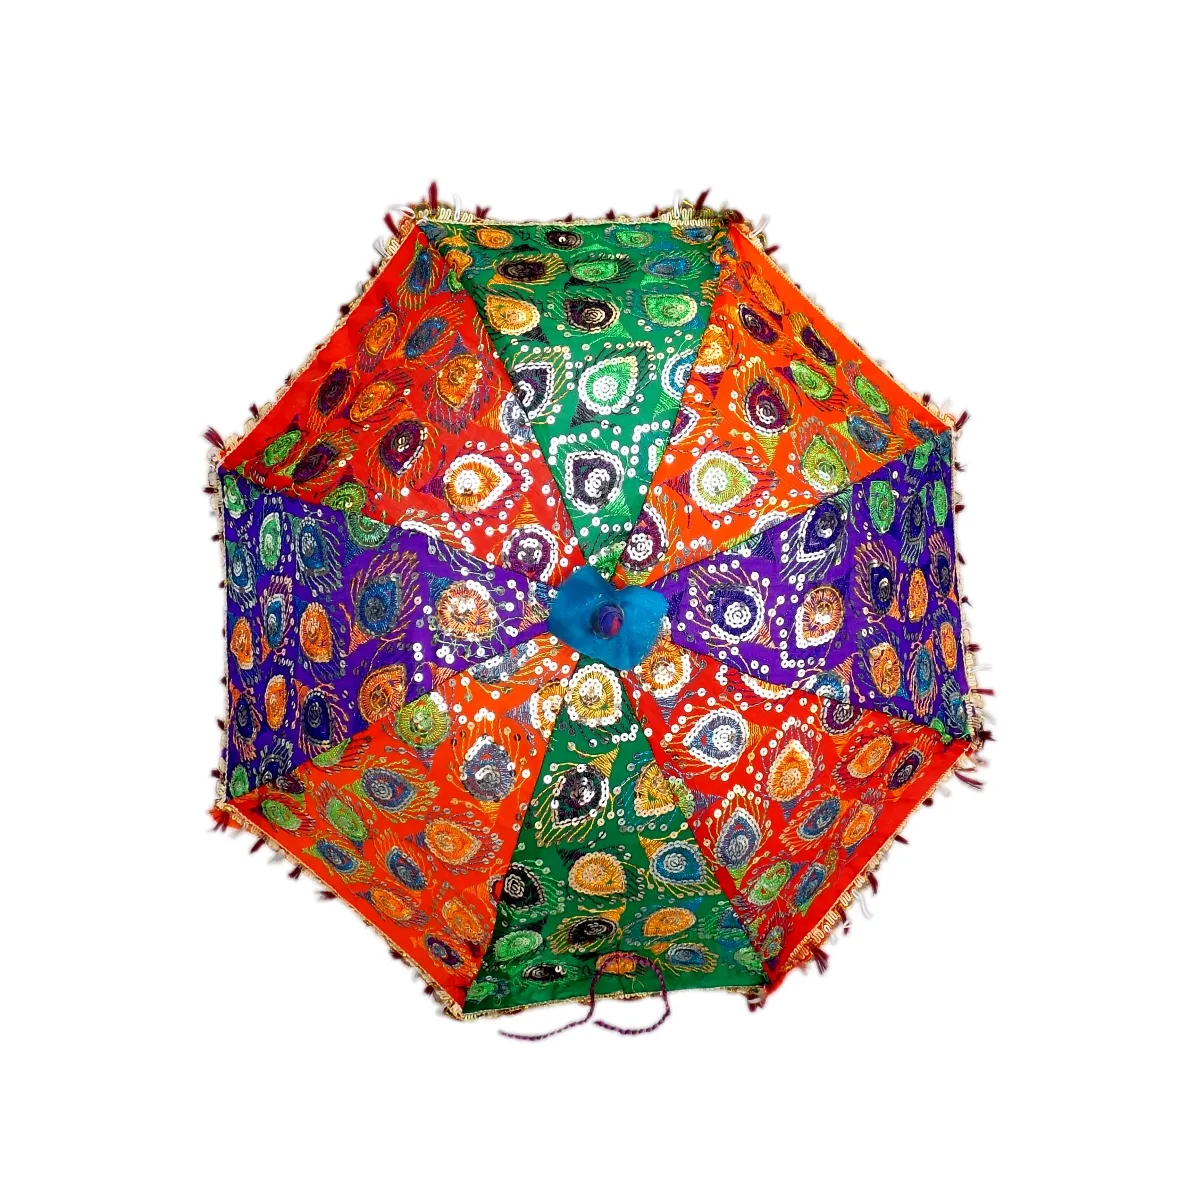 Größte Vielfalt Großhandel indischen Rajasthani ethnischen handgemachten Stickerei Regenschirm für Hochzeit oder Dekor Regenschirm